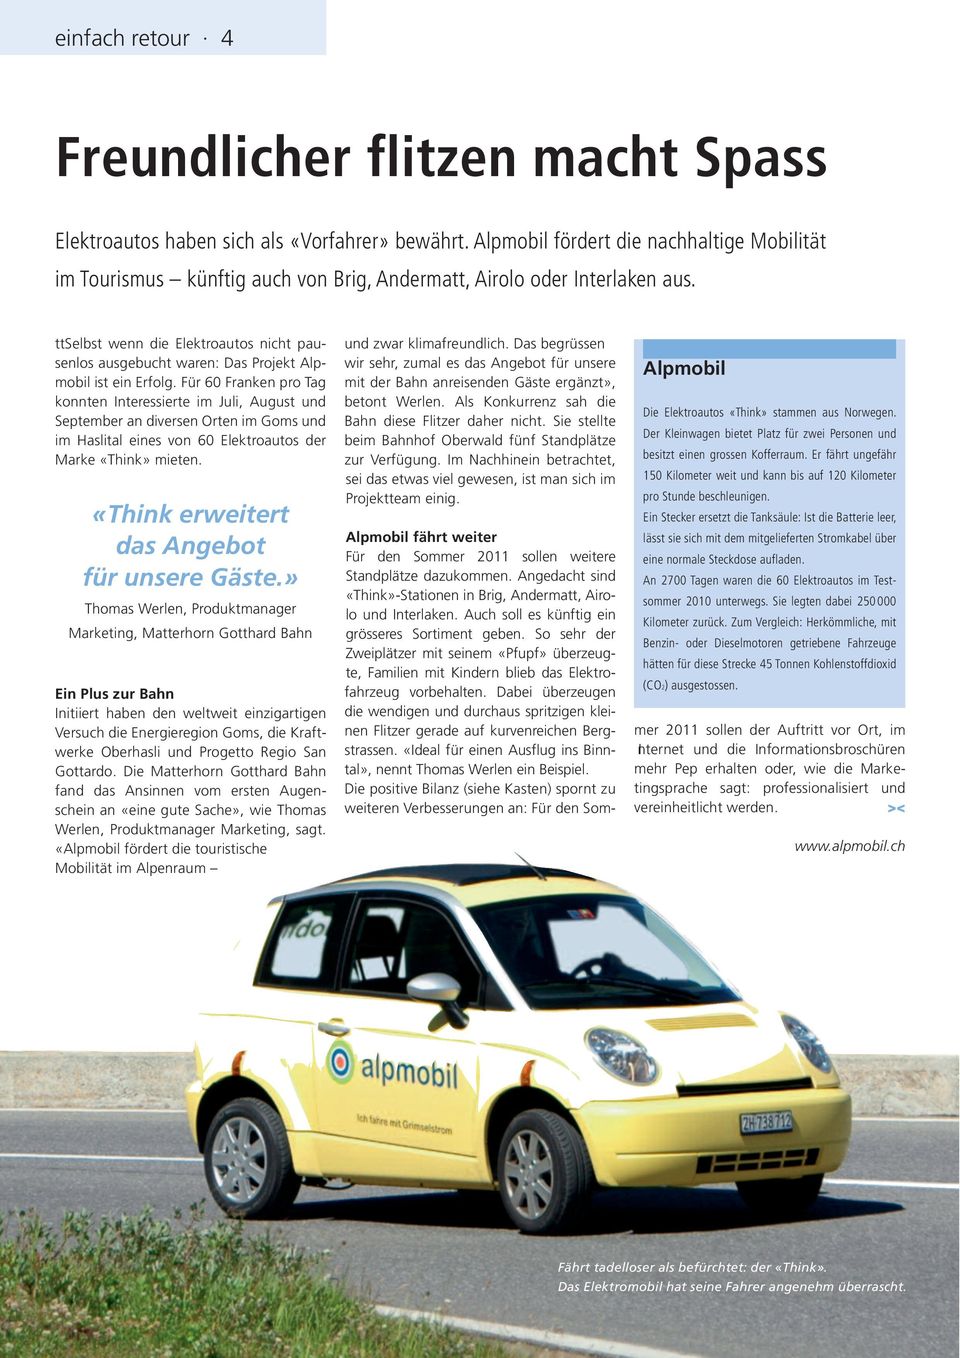 ttselbst wenn die Elektroautos nicht pausenlos ausgebucht waren: Das Projekt Alp - mobil ist ein Erfolg.